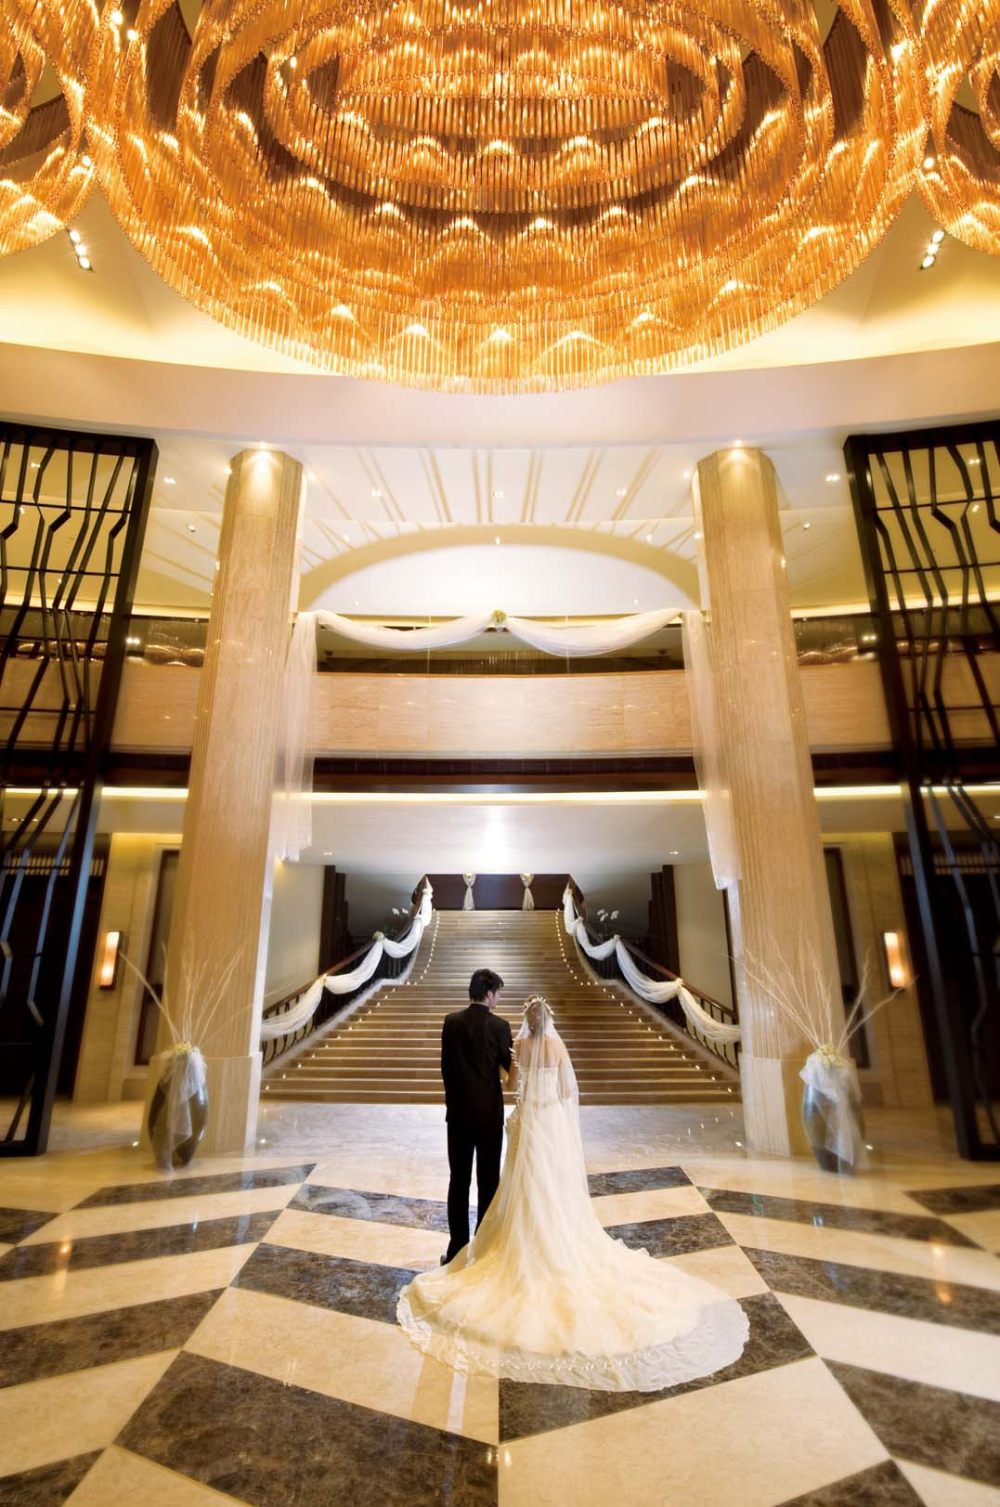 无锡逸林希尔顿酒店 Wuxi Double Tree Hotel_Wedding Convention Centre.jpg